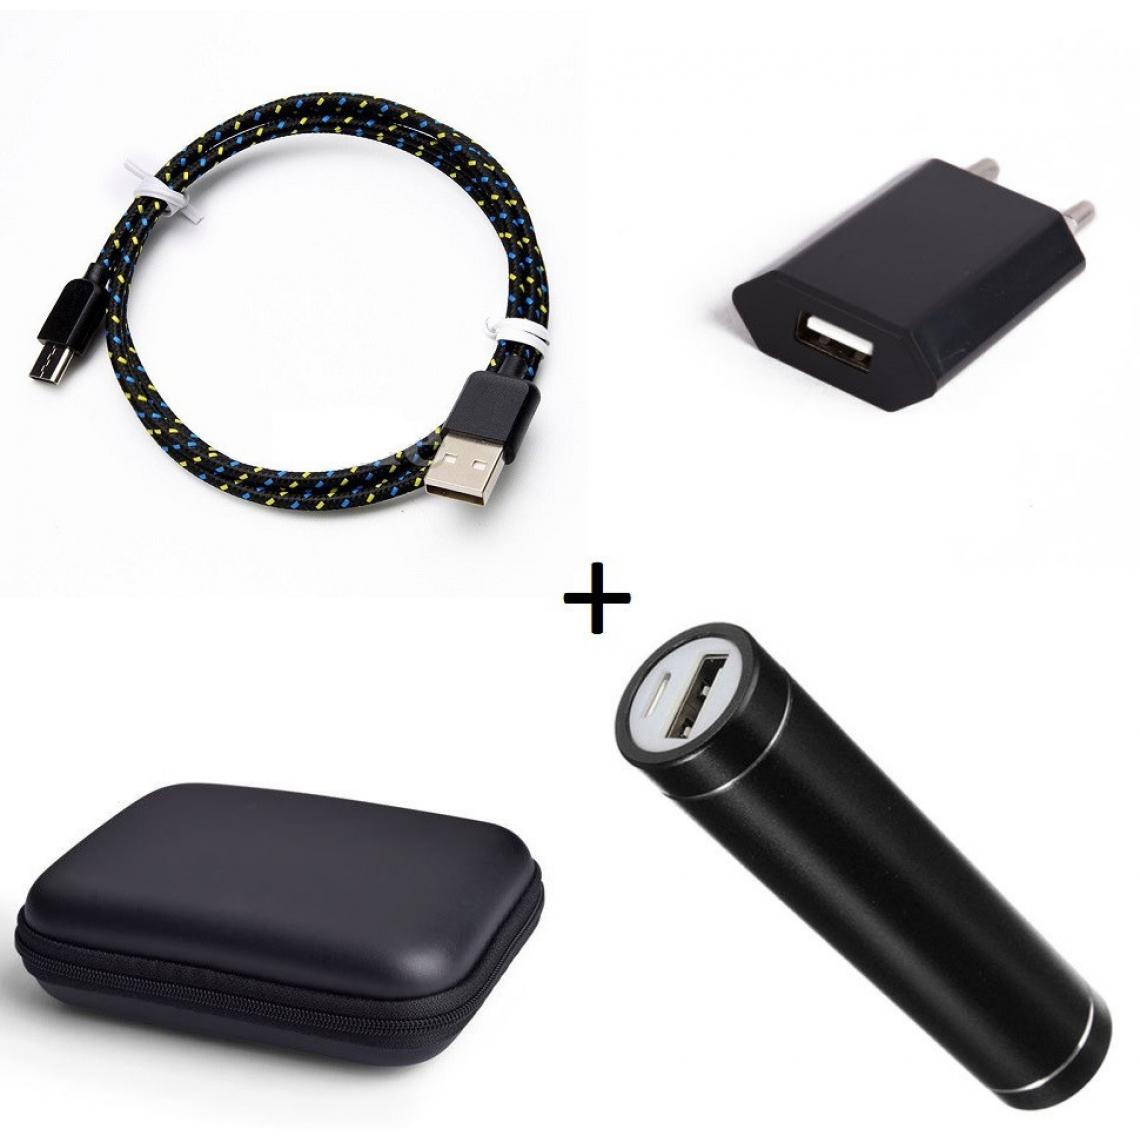 Shot - Pack pour BLACKBERRY KEY2 LE (Cable Chargeur Type C Tresse 3m + Pochette + Batterie + Prise Secteur) Android (NOIR) - Chargeur secteur téléphone